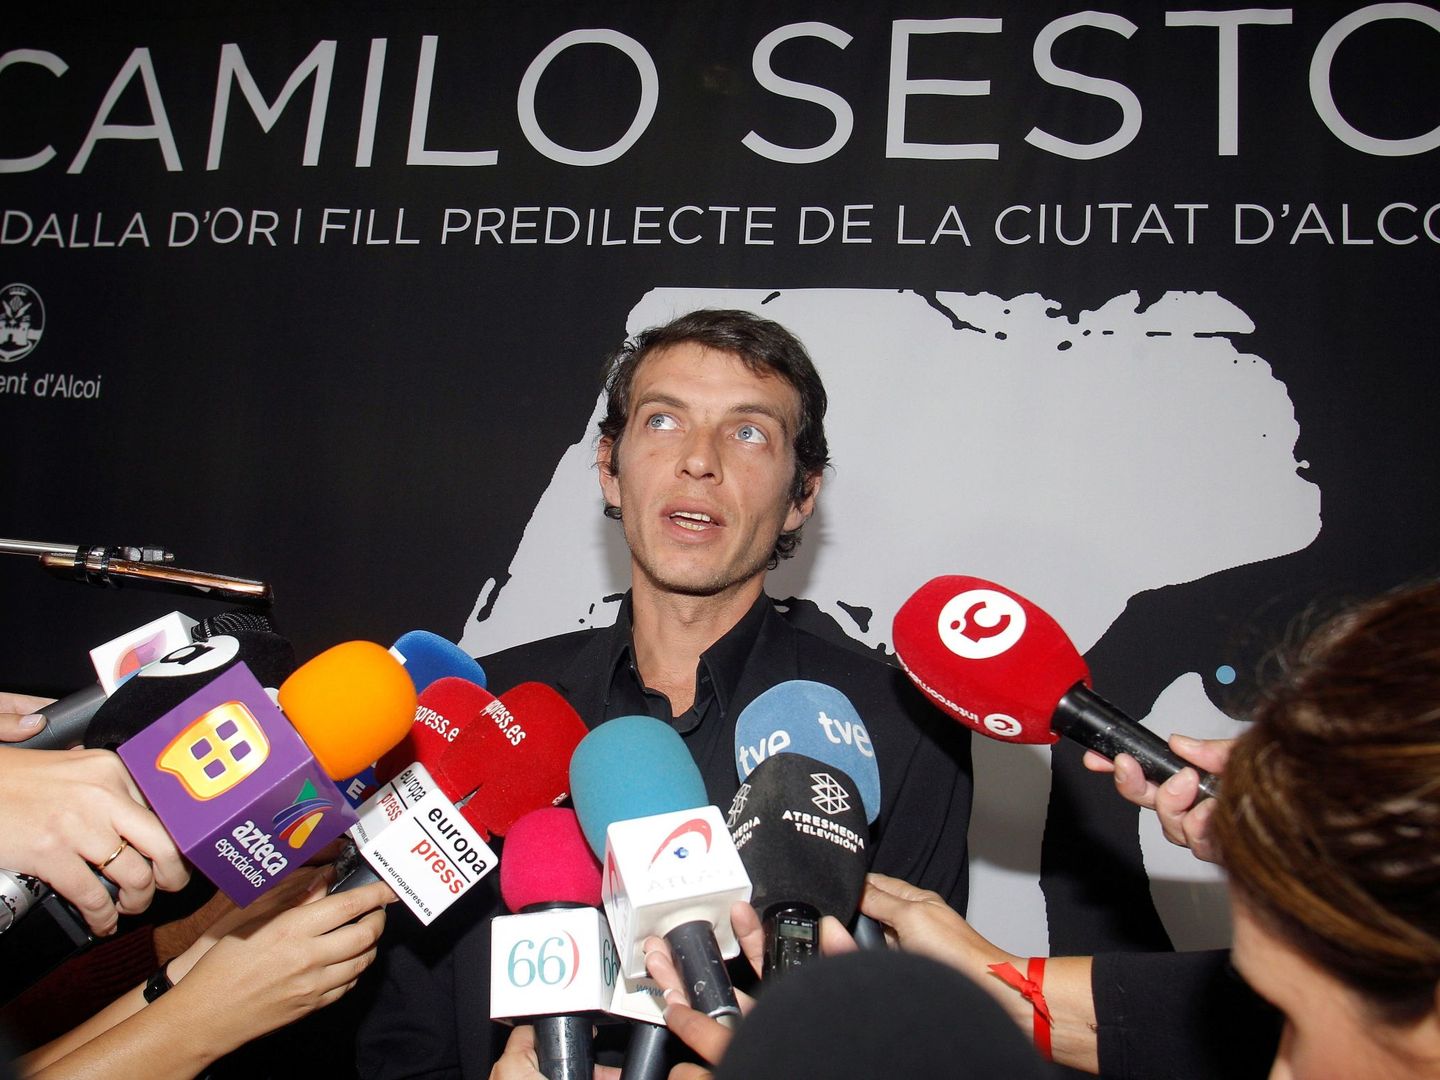 El hijo de Camilo Sesto, en octubre en Alcoy. (EFE)